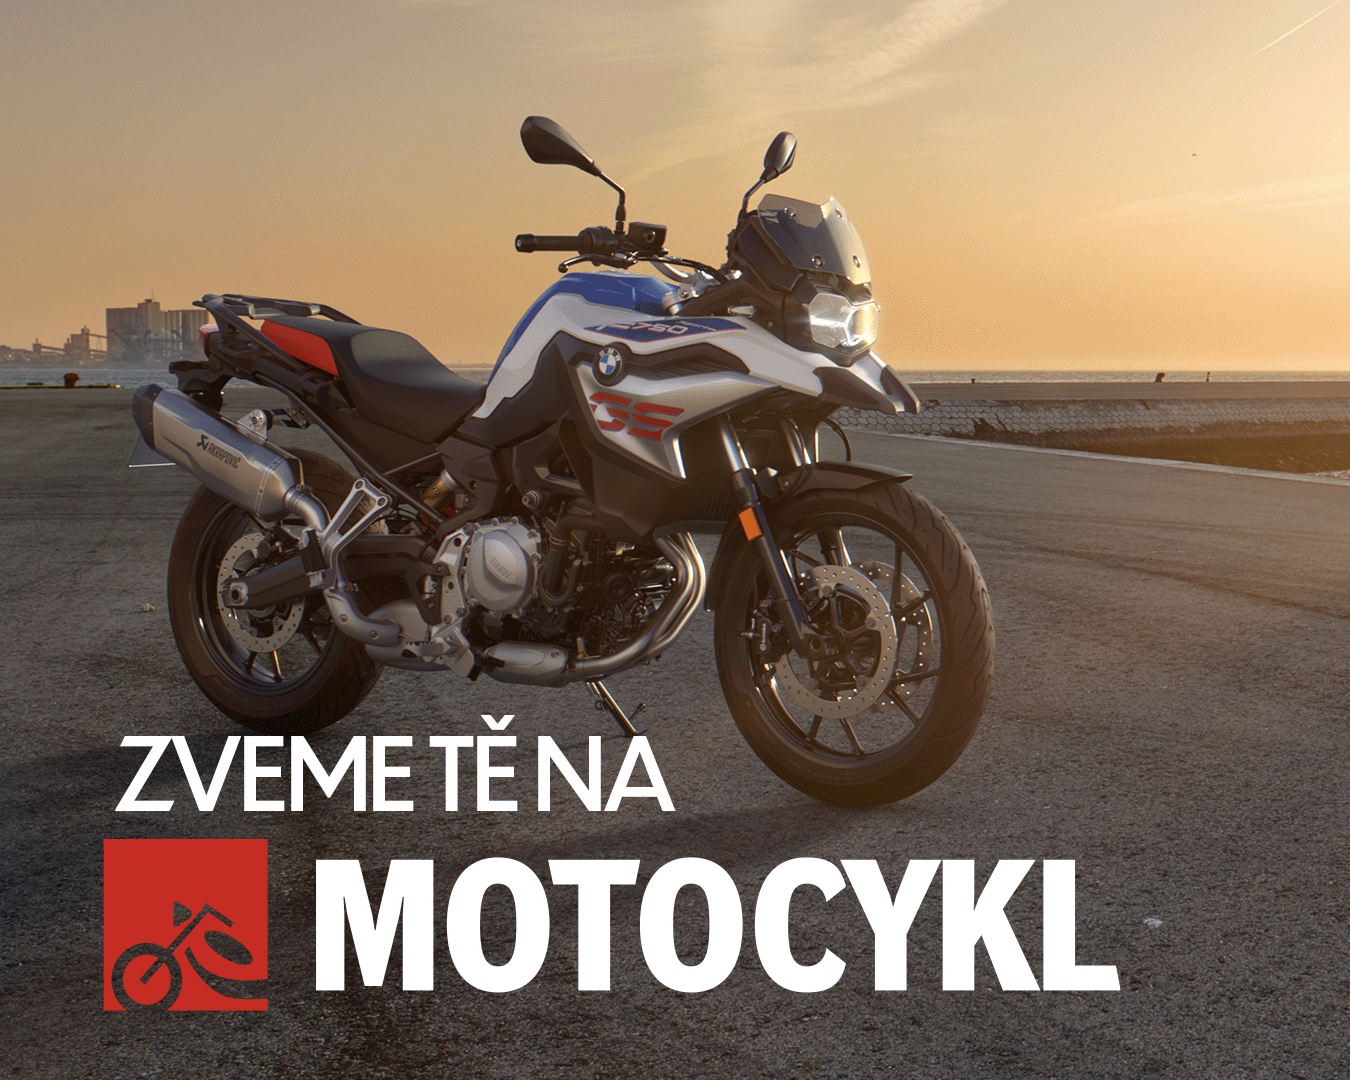 Přijď omrknout novinky na veletrh Motocykl 2023! Již tento týden 2.-5.3.2023 v PVA Expro Praha